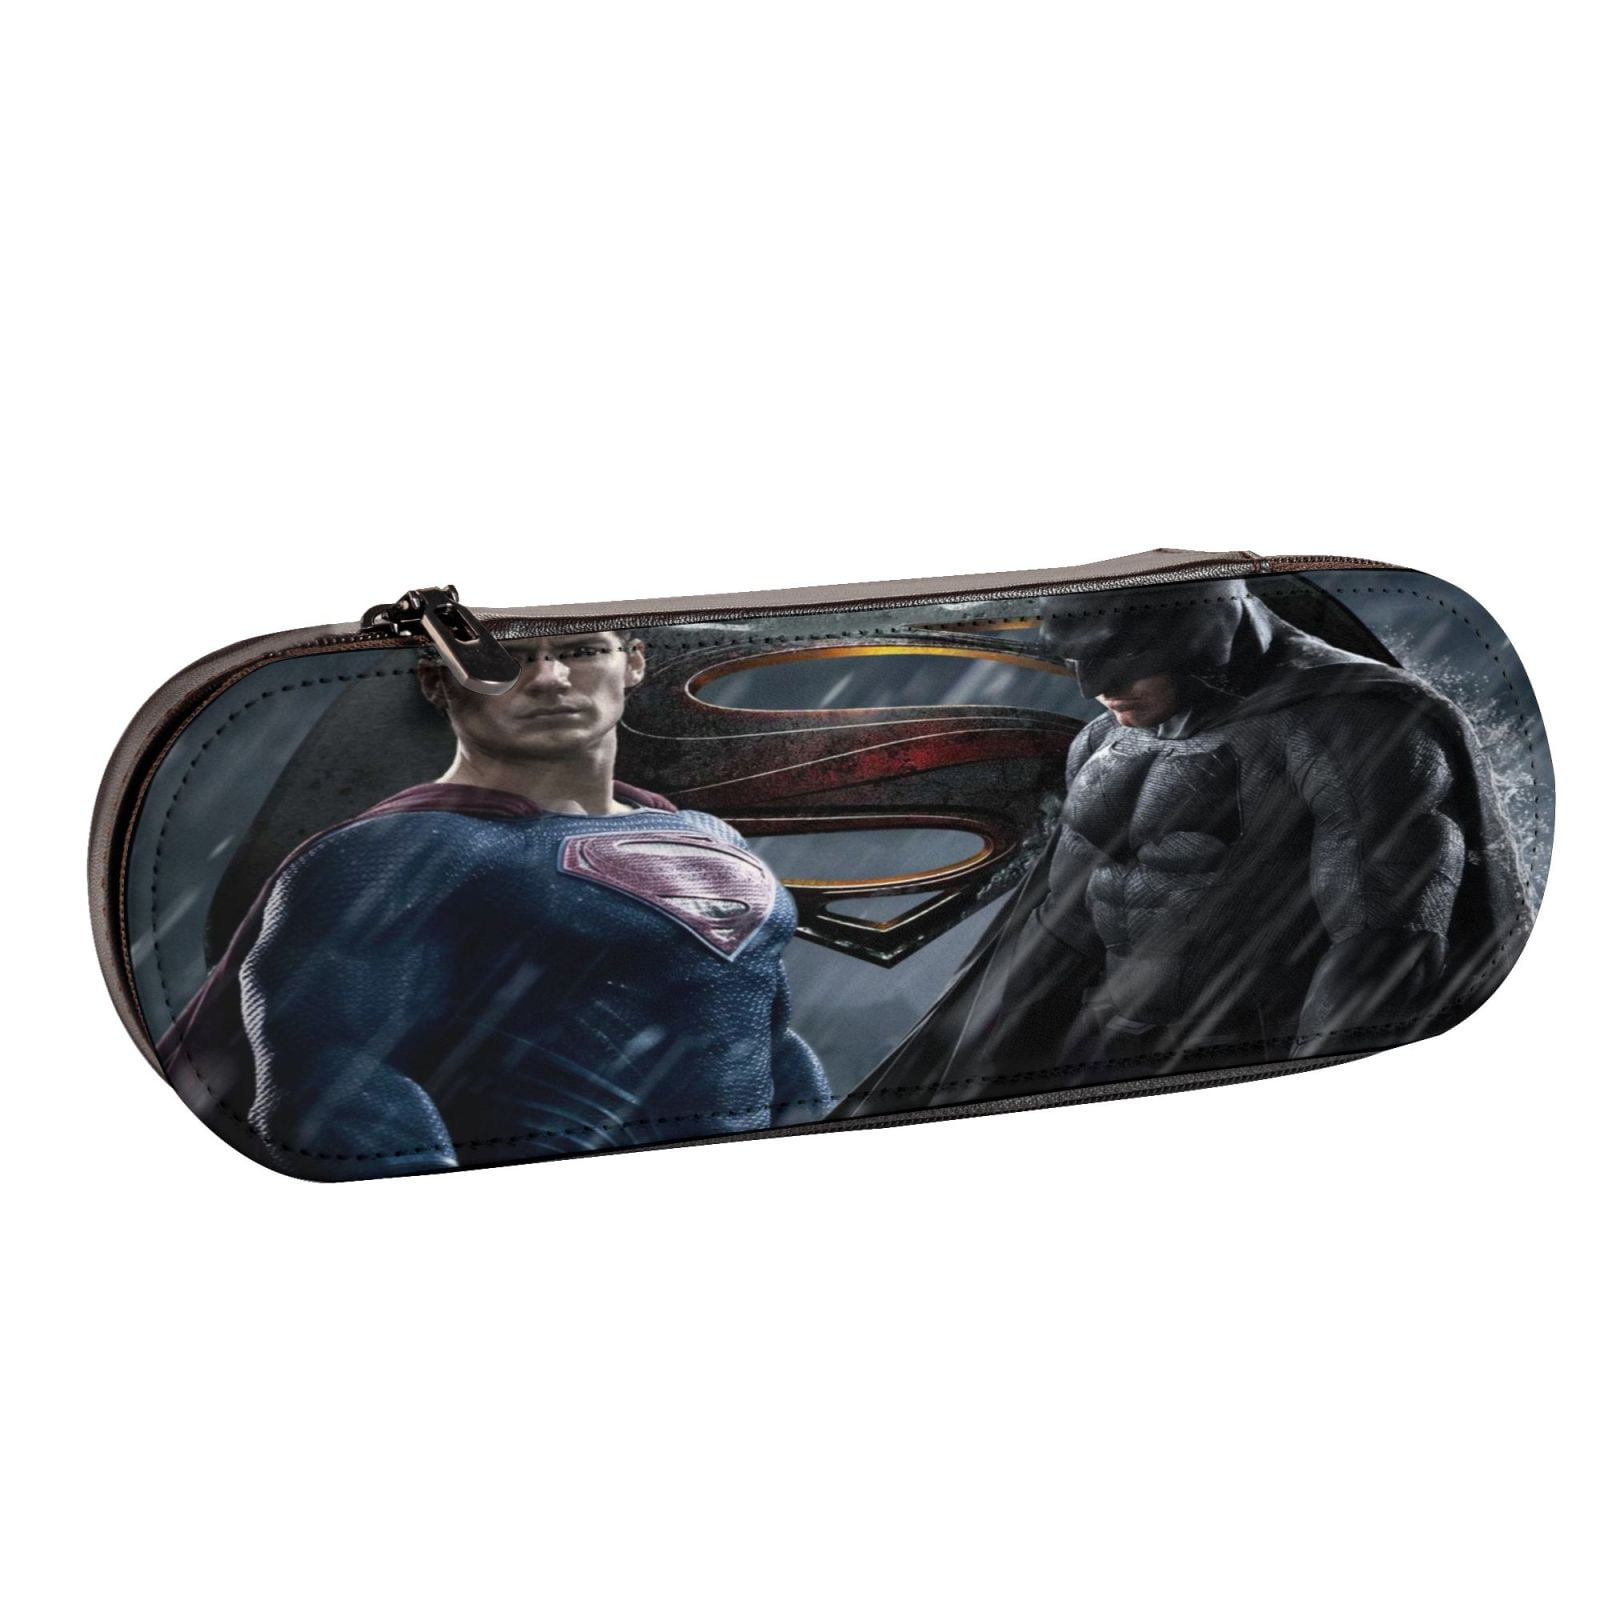 Batman VS Superman Pencil Case/Pouch Design Set of 2 Dreamshop14